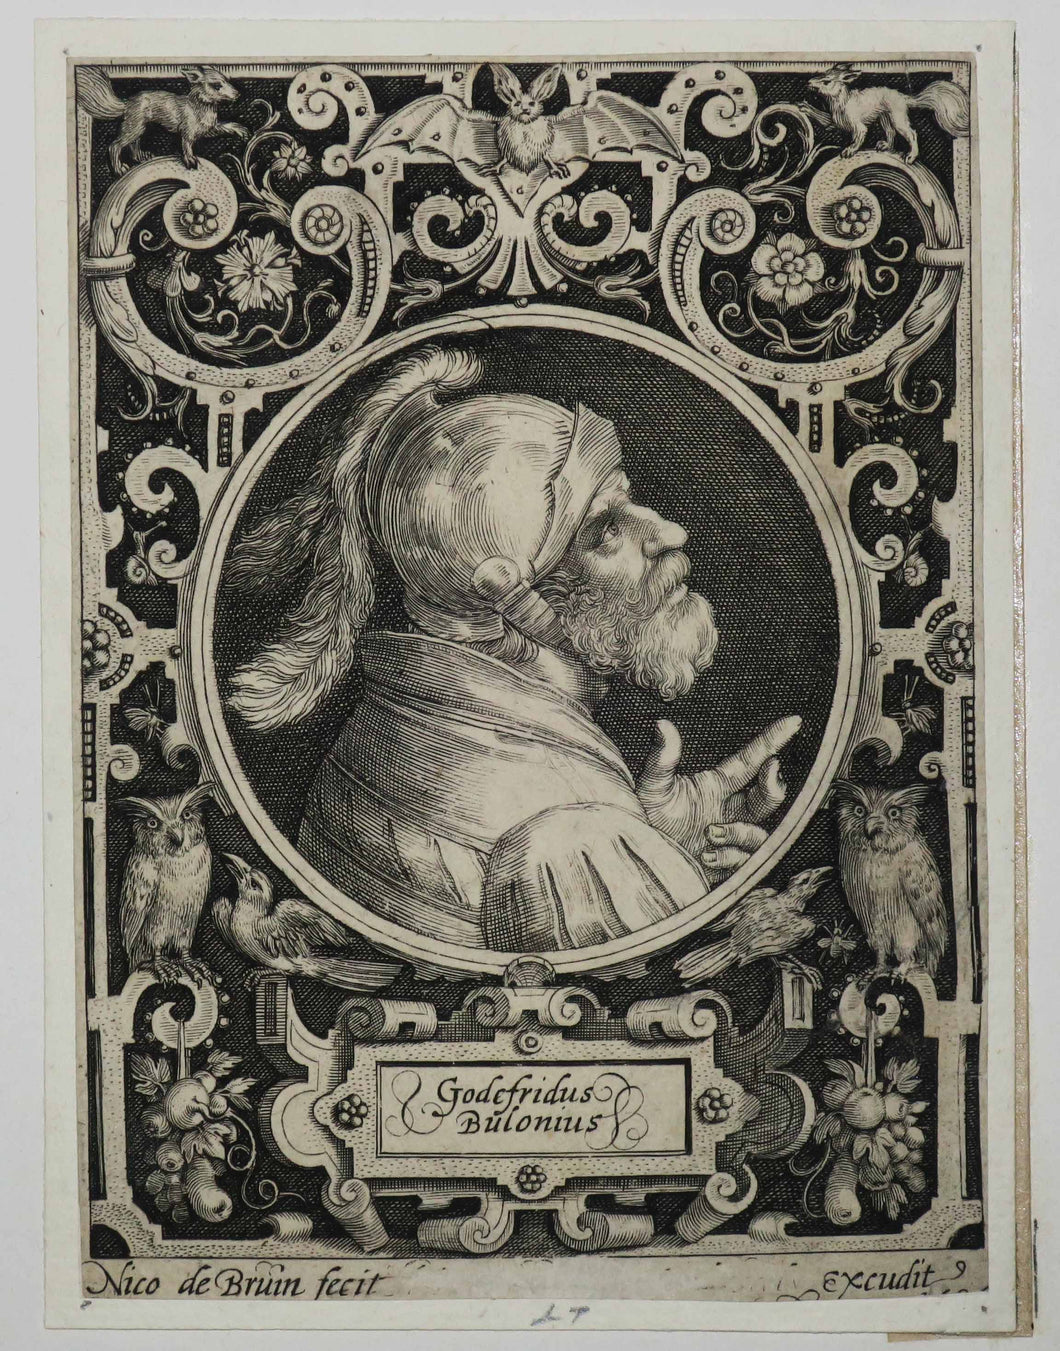 Portrait de Godefroy de Bouillon.